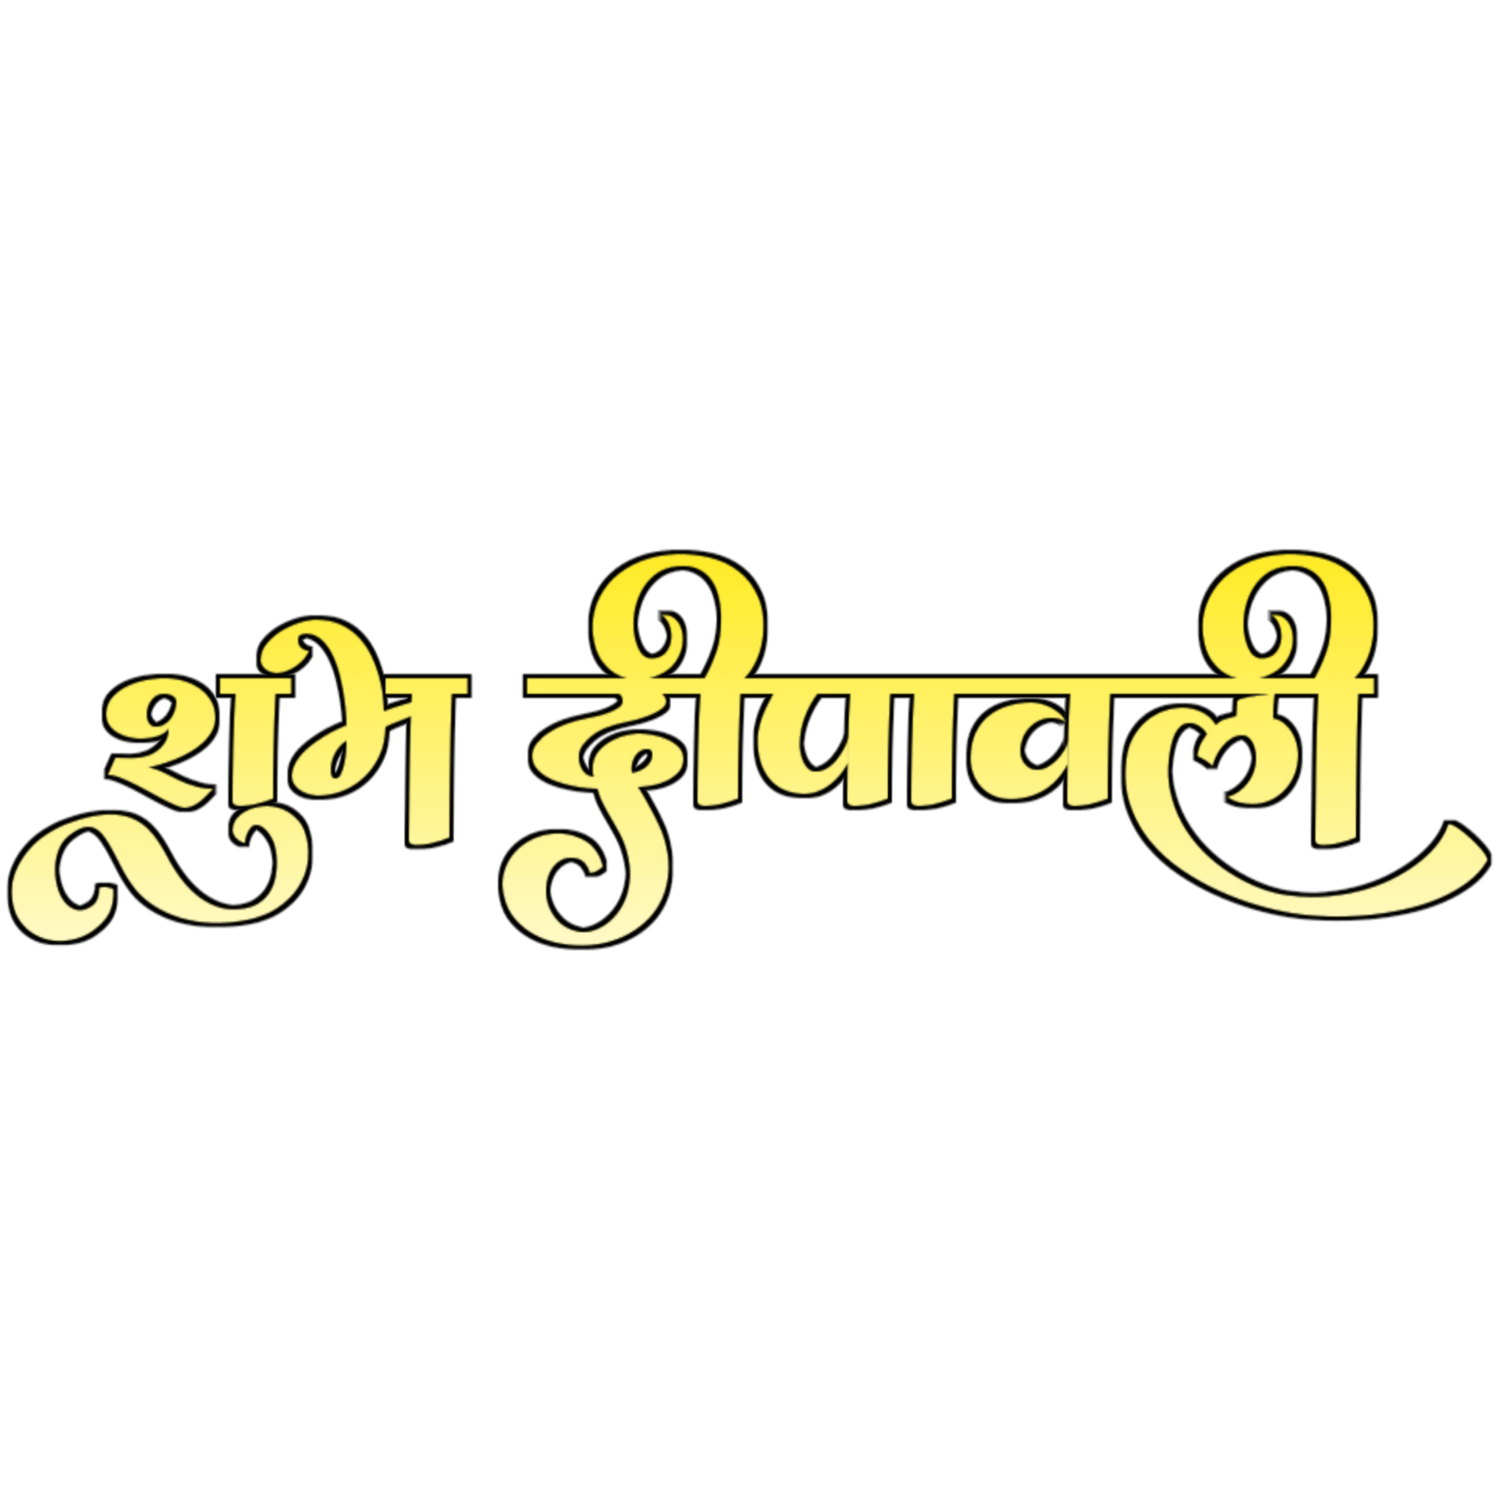 Shubh Dipawali Hindi Text Transparent Photo